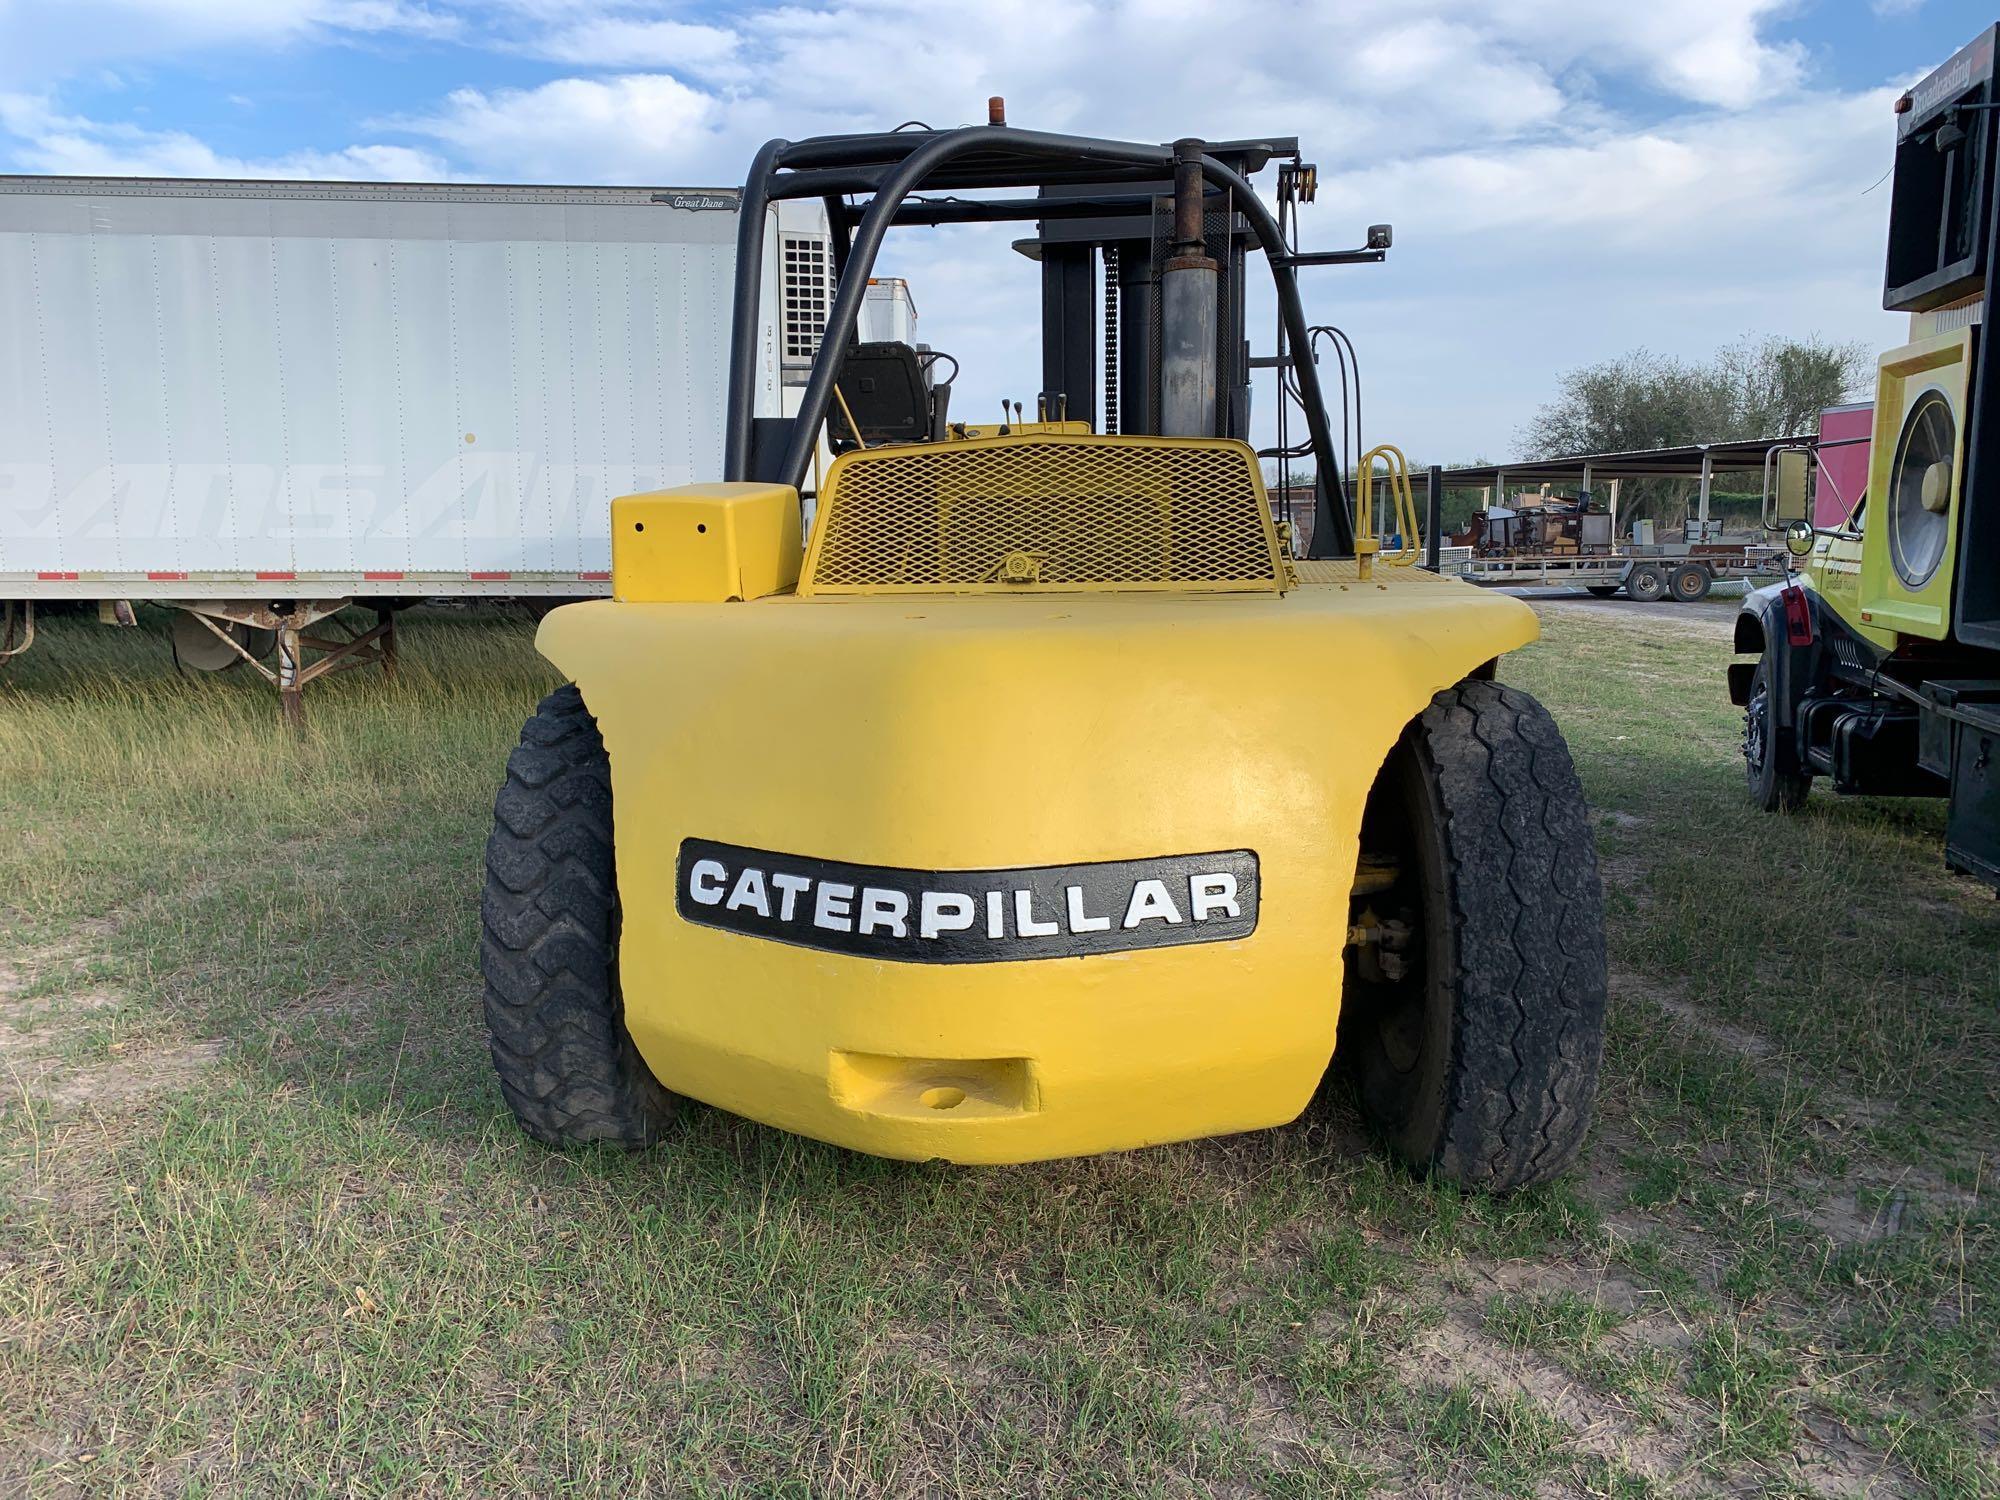 Caterpillar Forklift AM-40, Srl# 84R00148, Type D